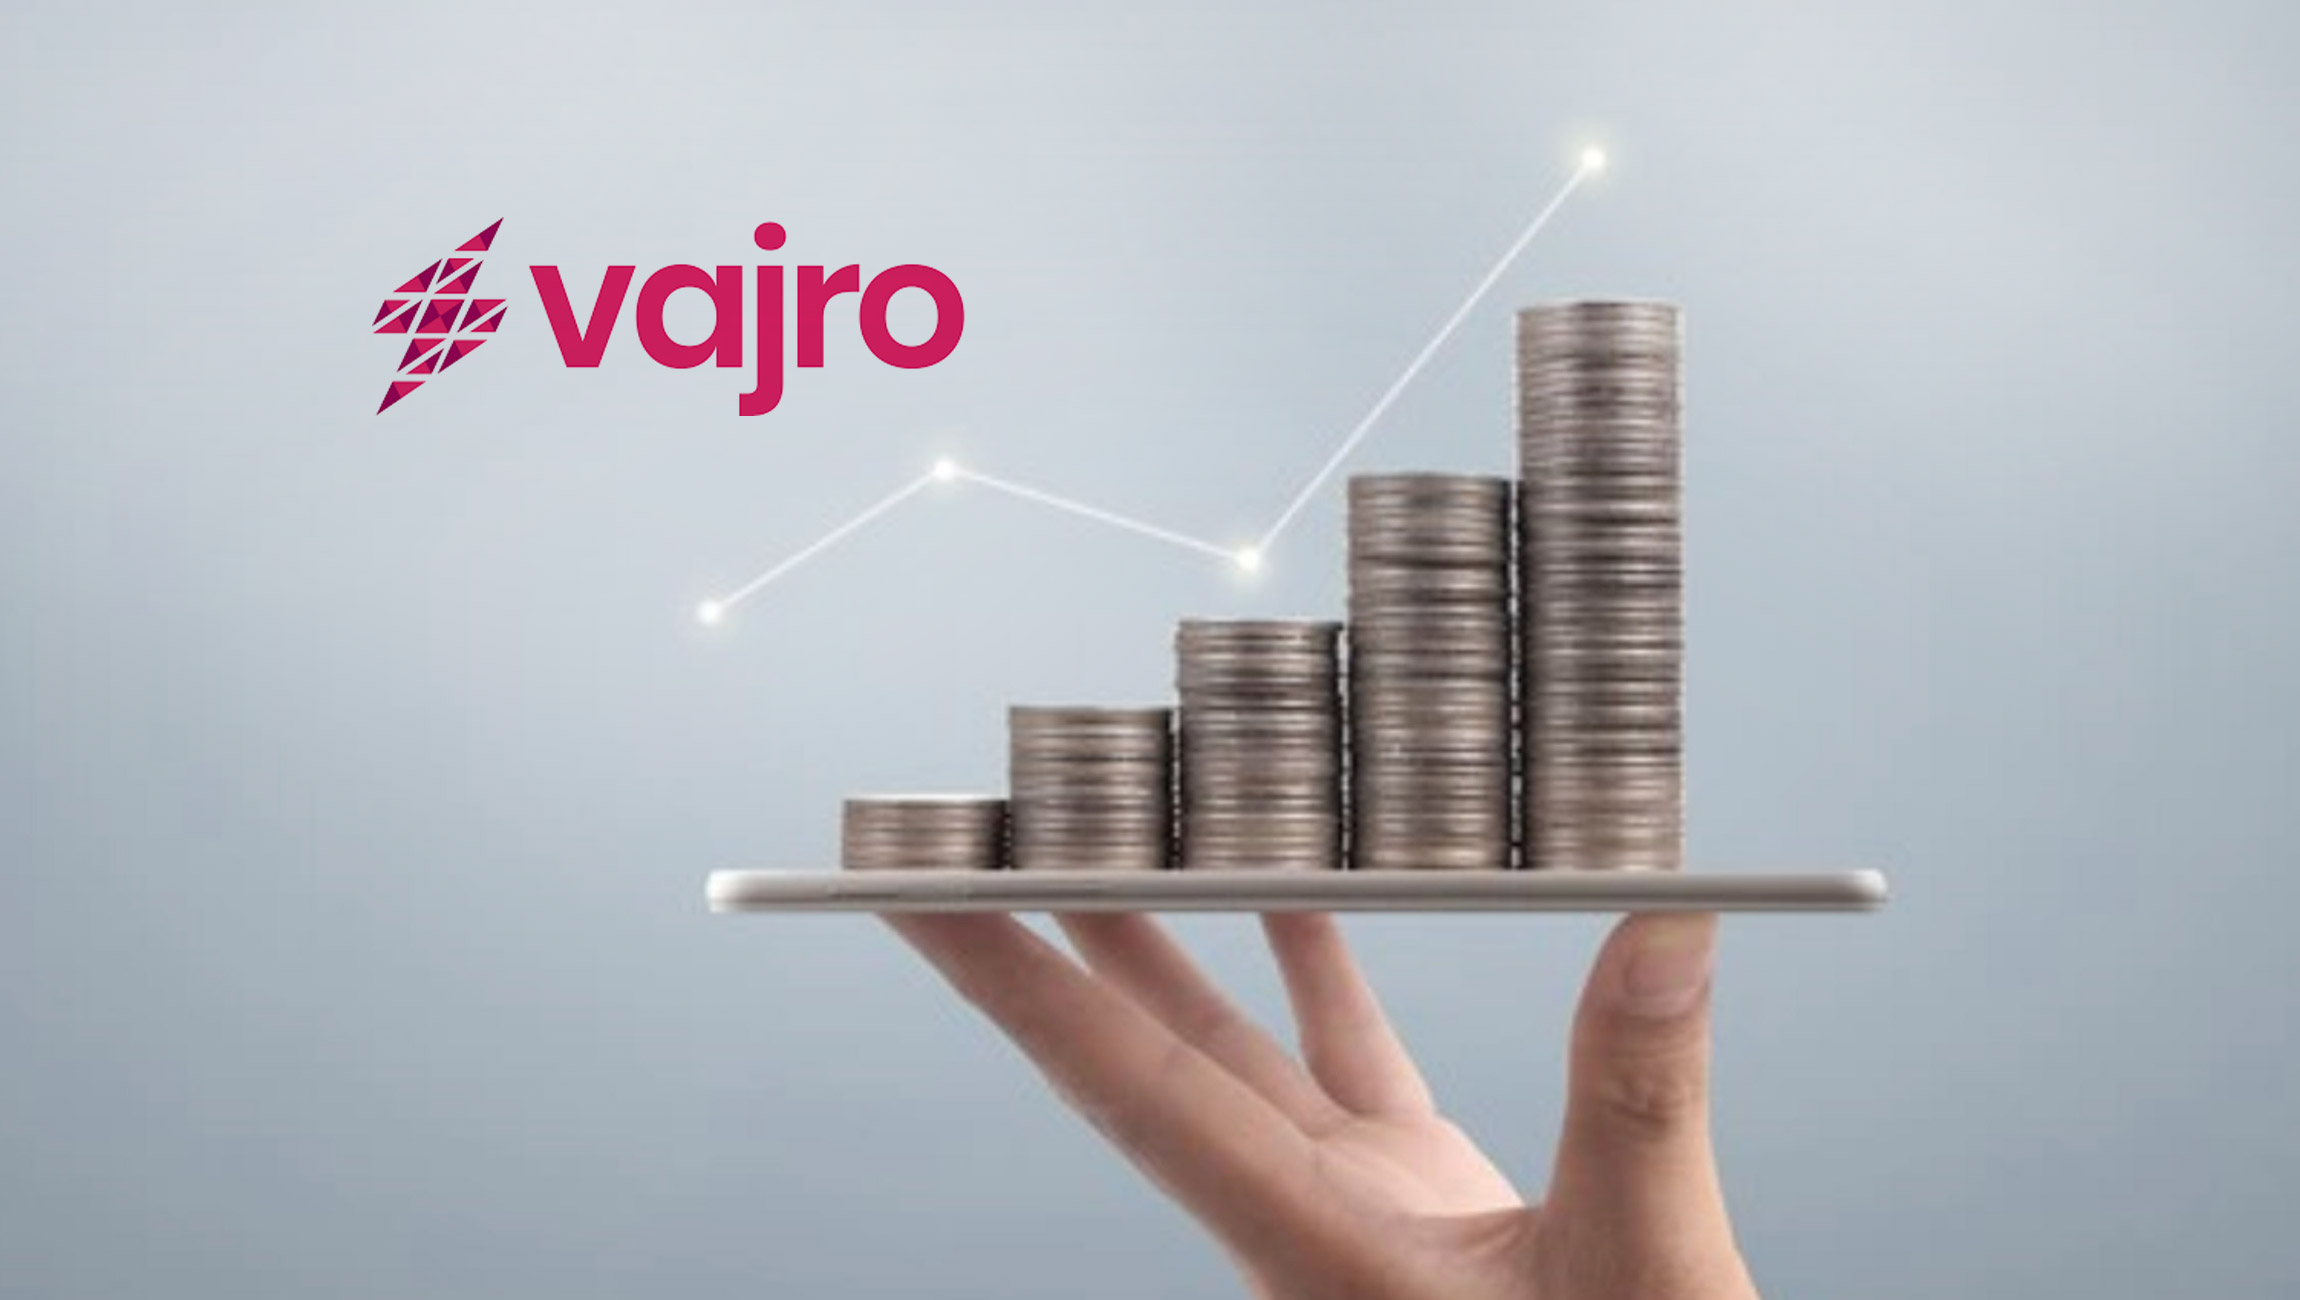 Mobile-App-Platform-Vajro-Secures-_8.5-Million-of-Series-A-Funding